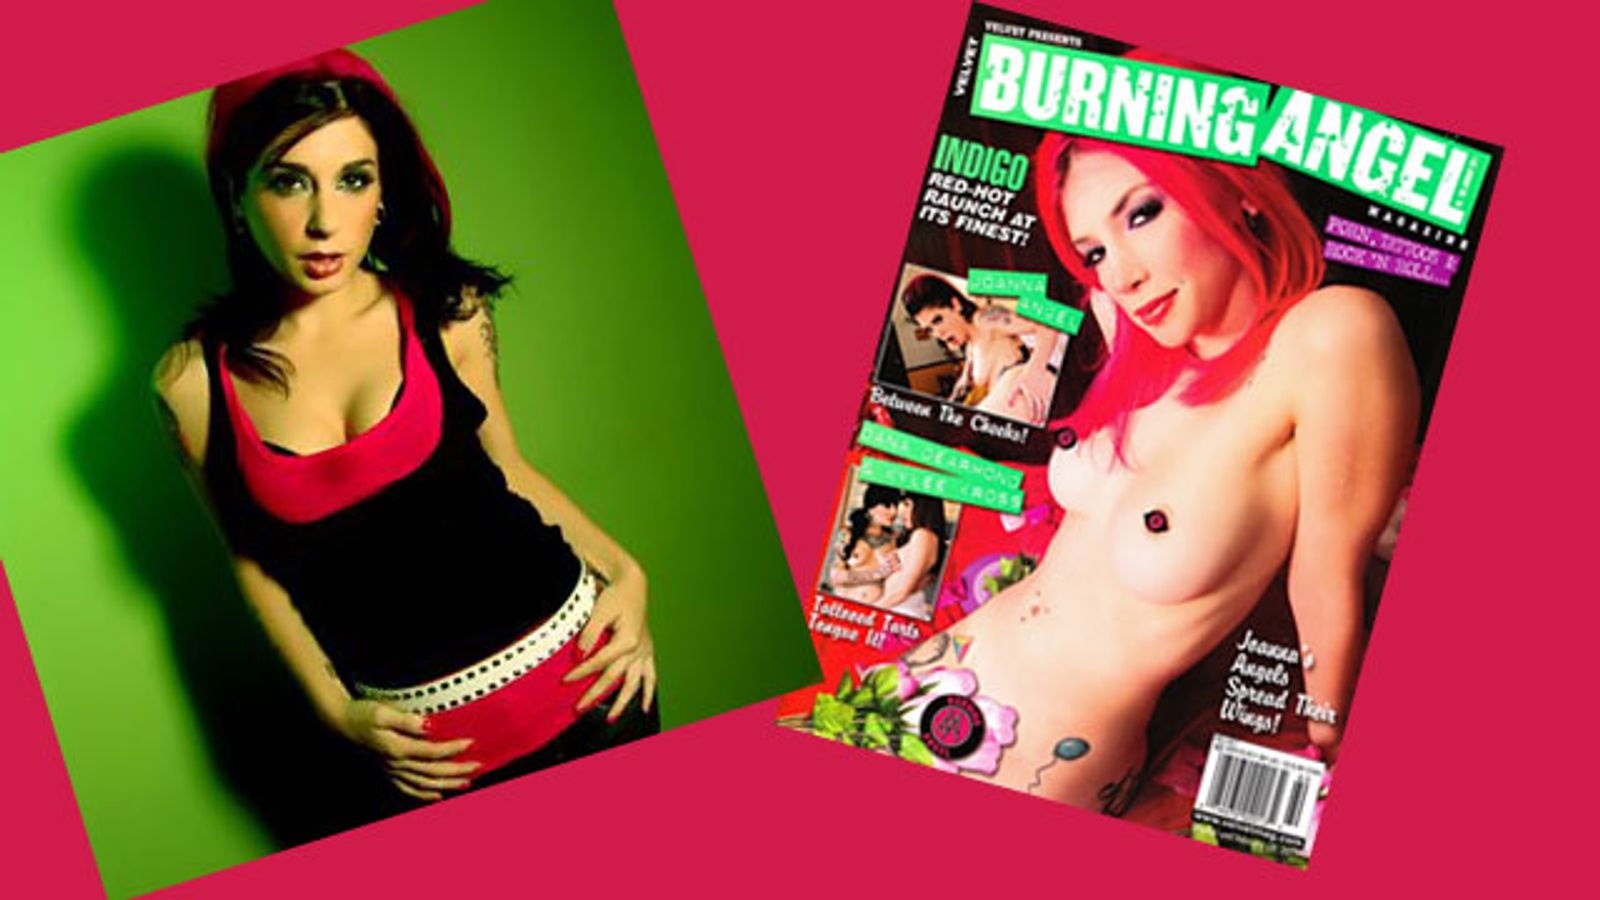 Third Issue of BurningAngel Magazine Available Now